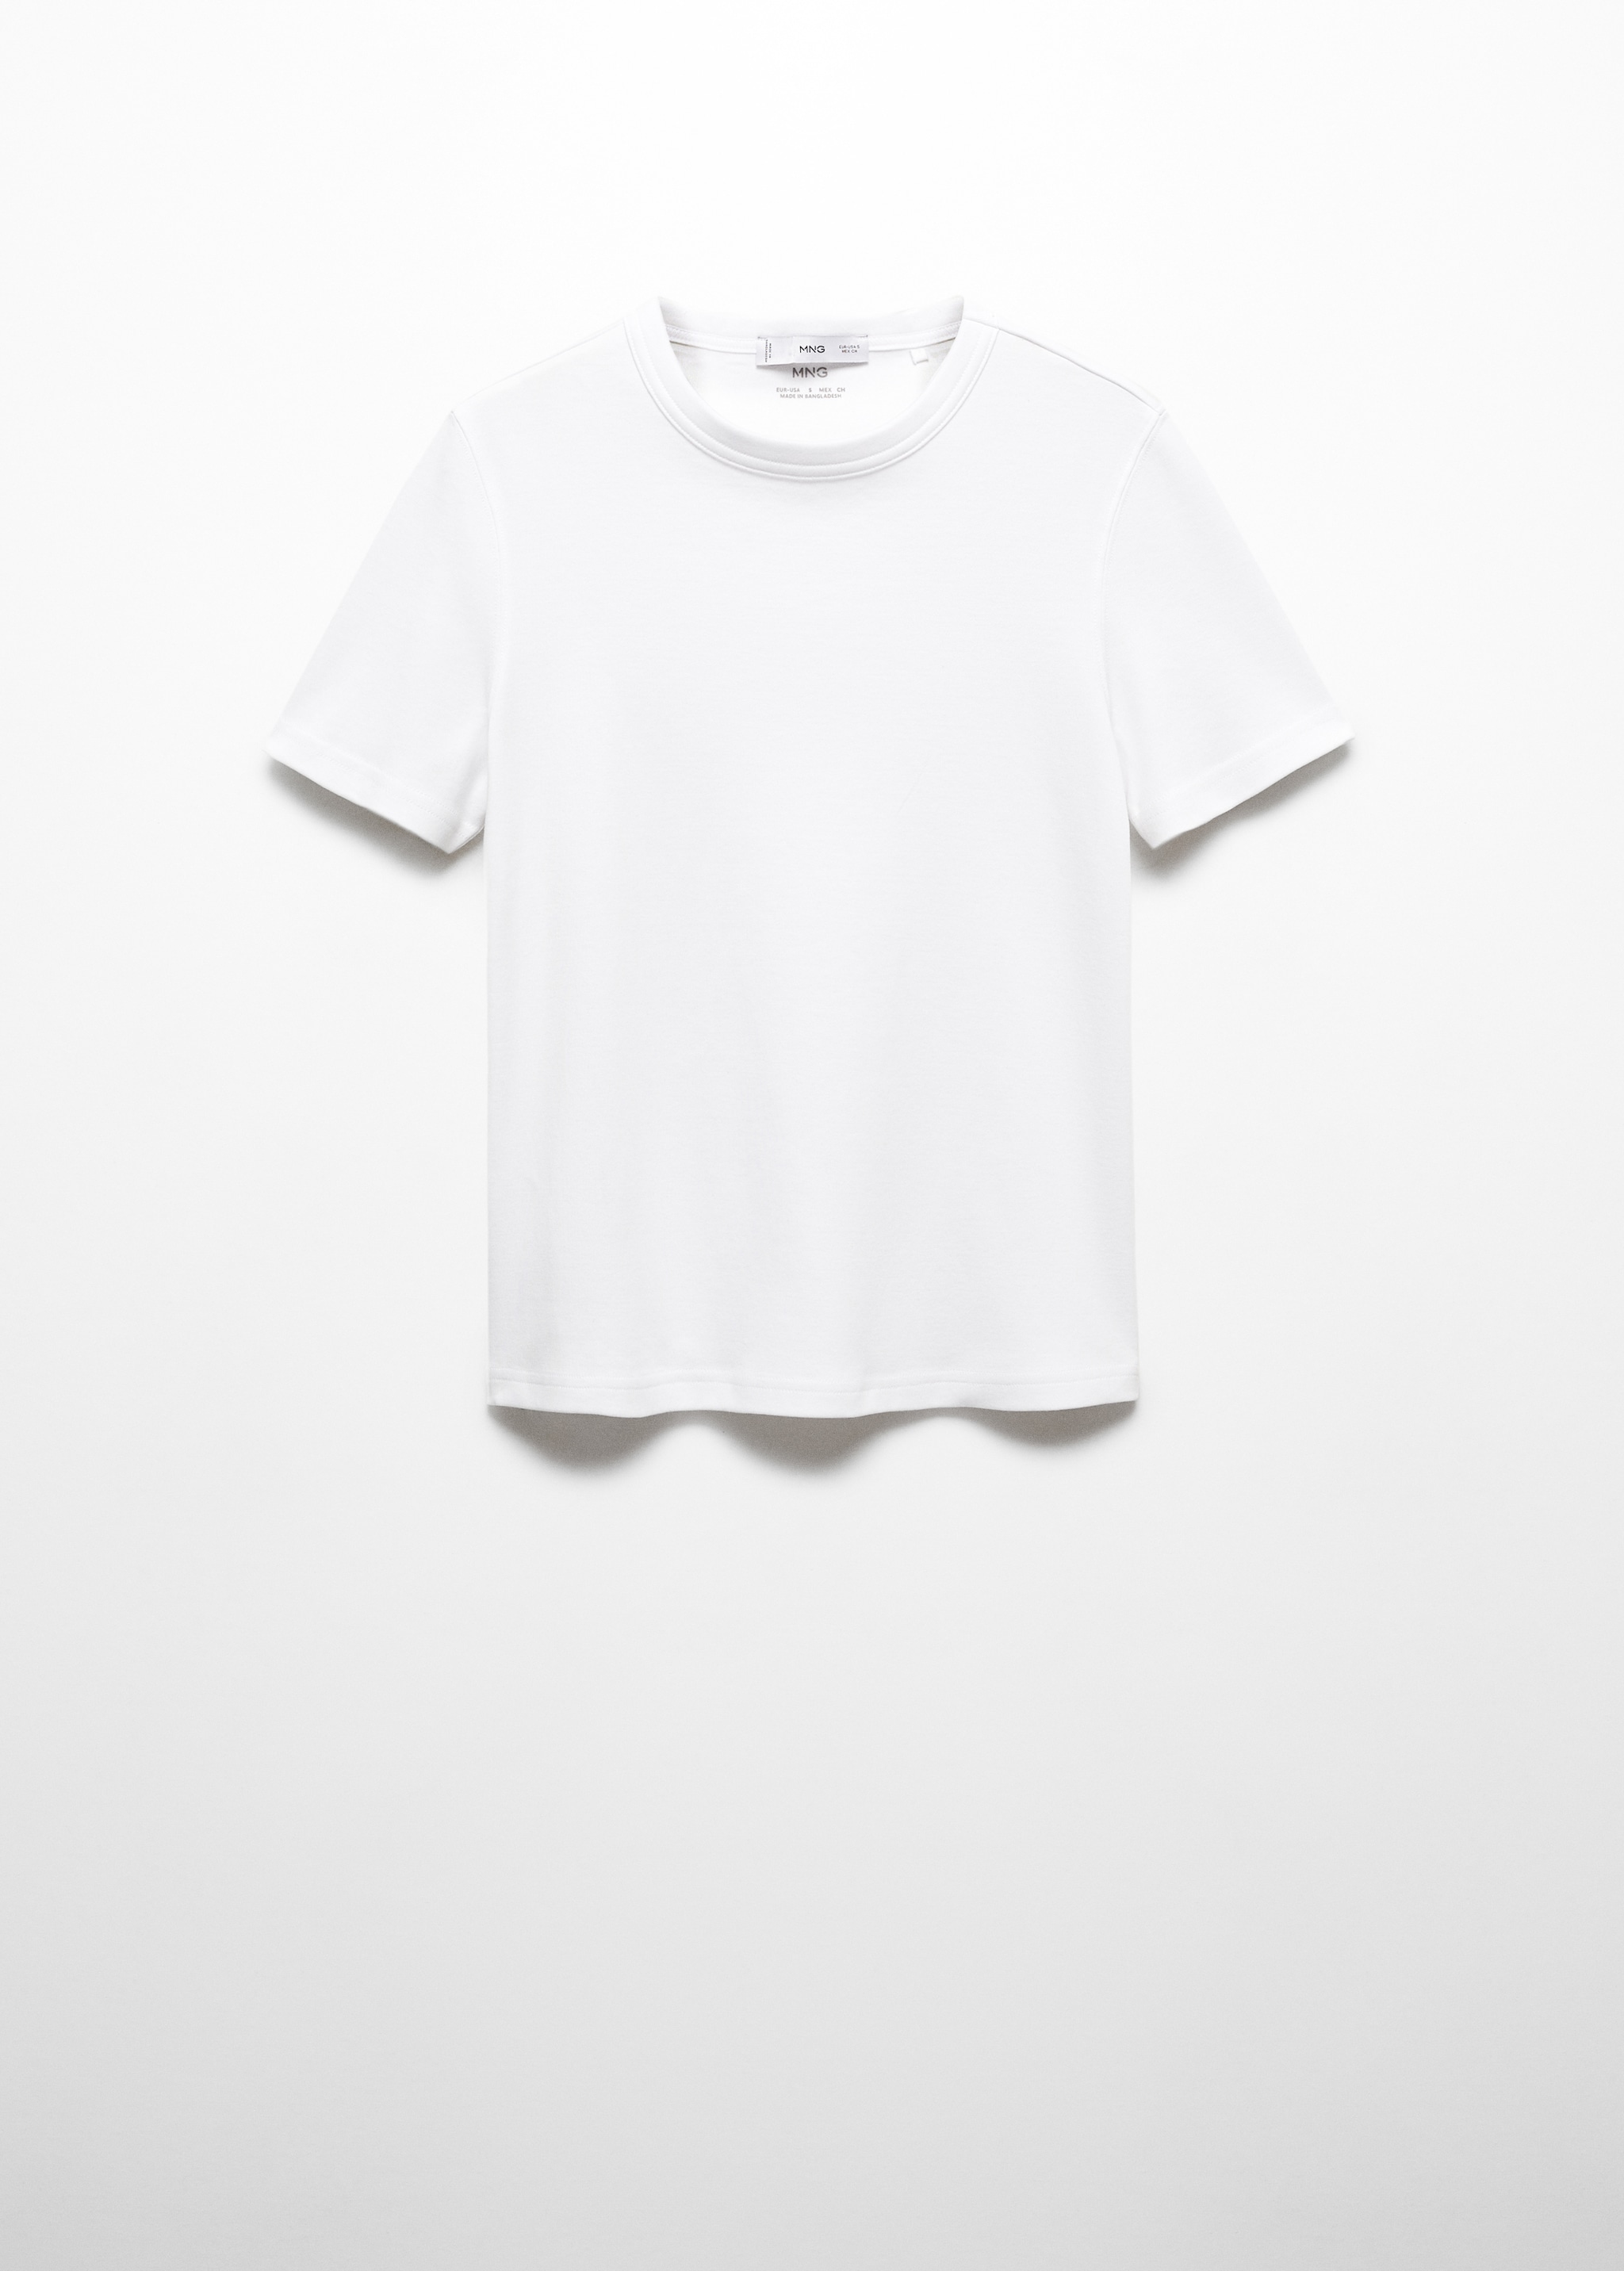 Maglietta Premium cotone - Articolo senza modello